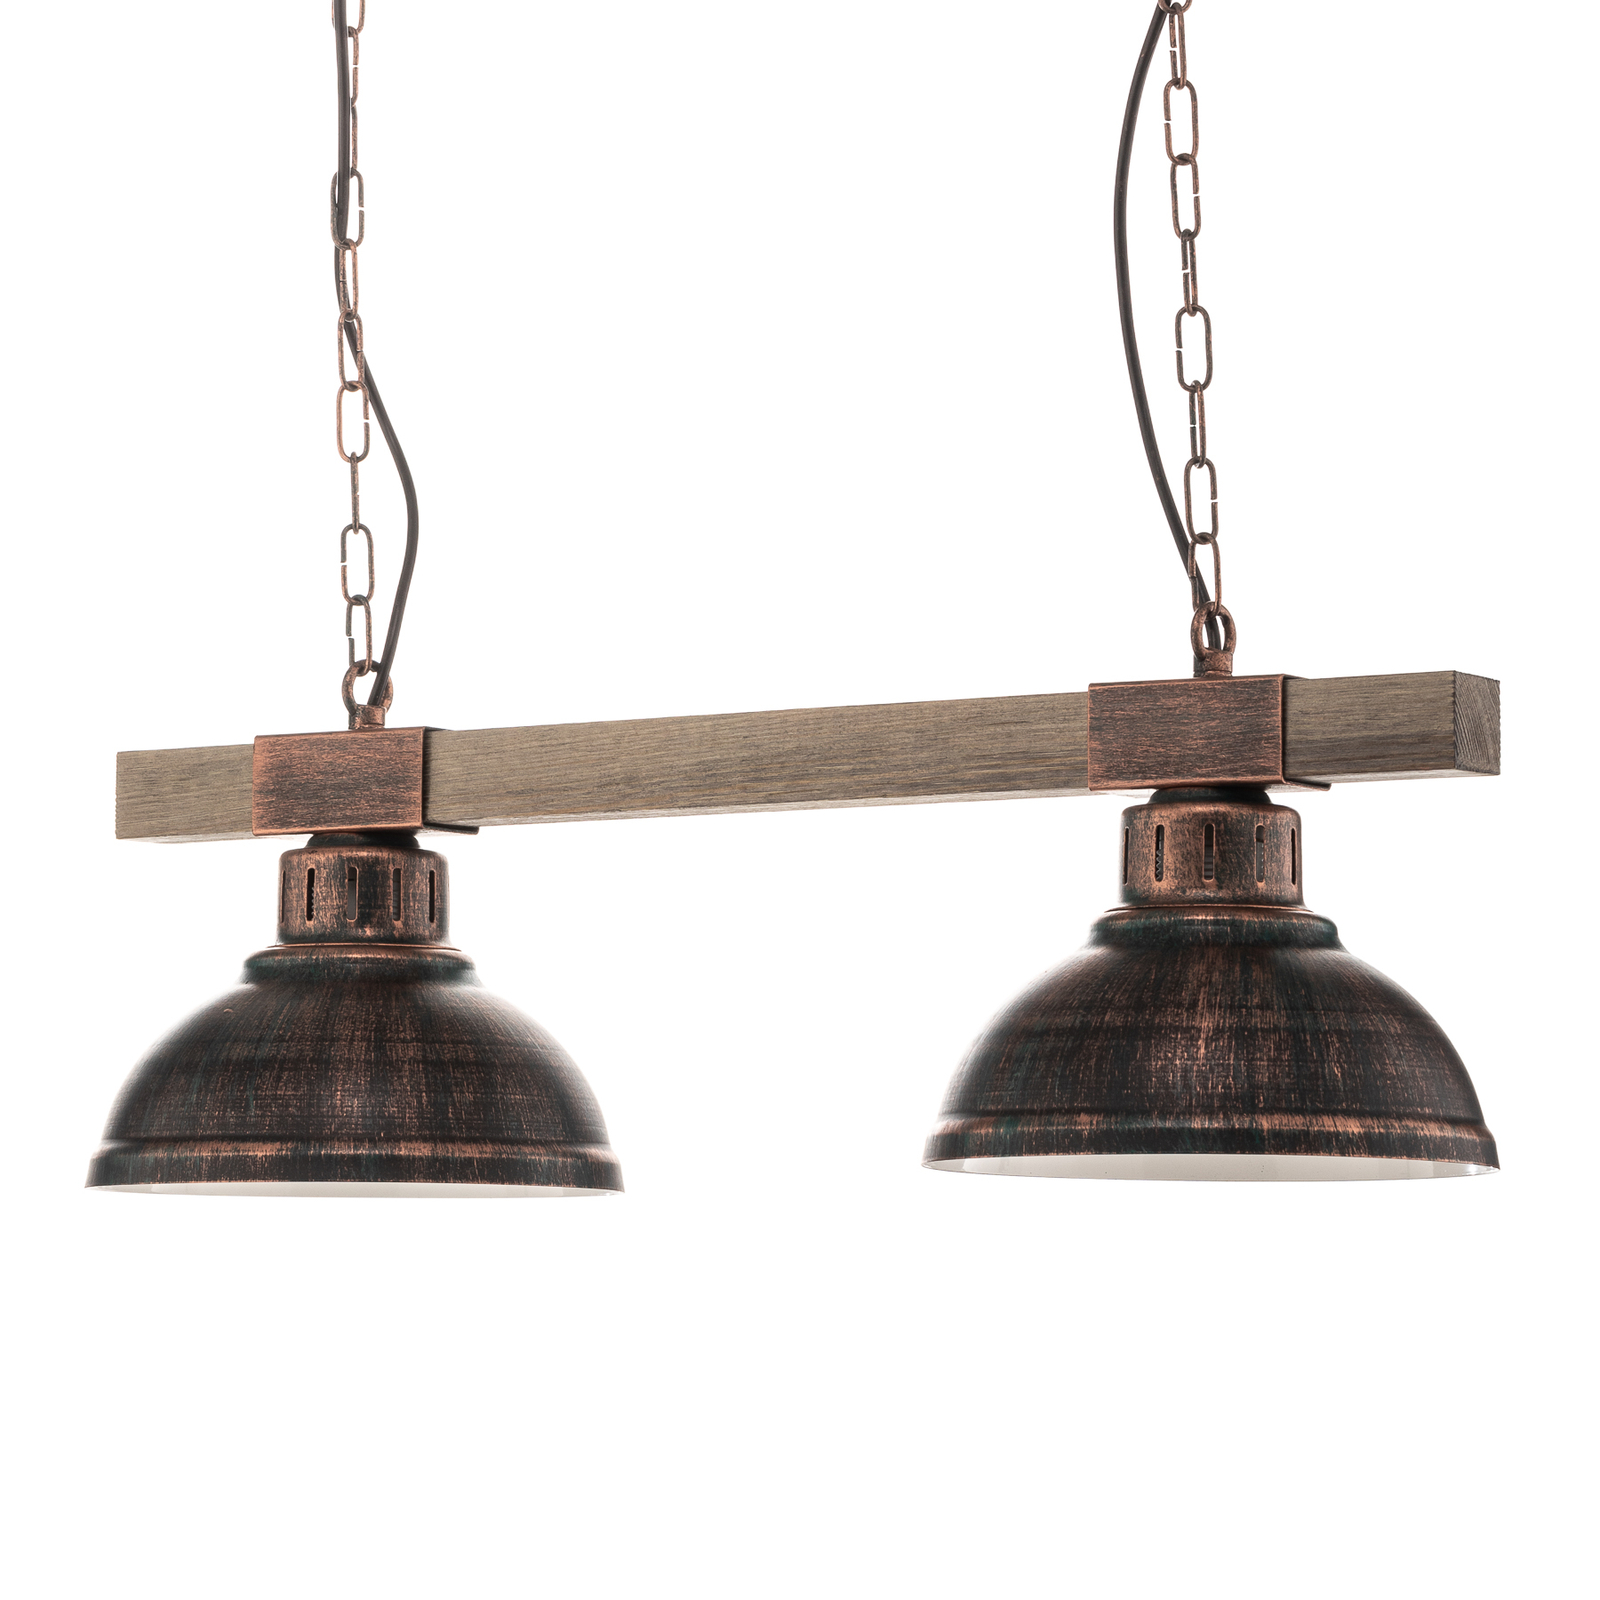 Hakon hængelampe to lys rustbrun/naturligt træ